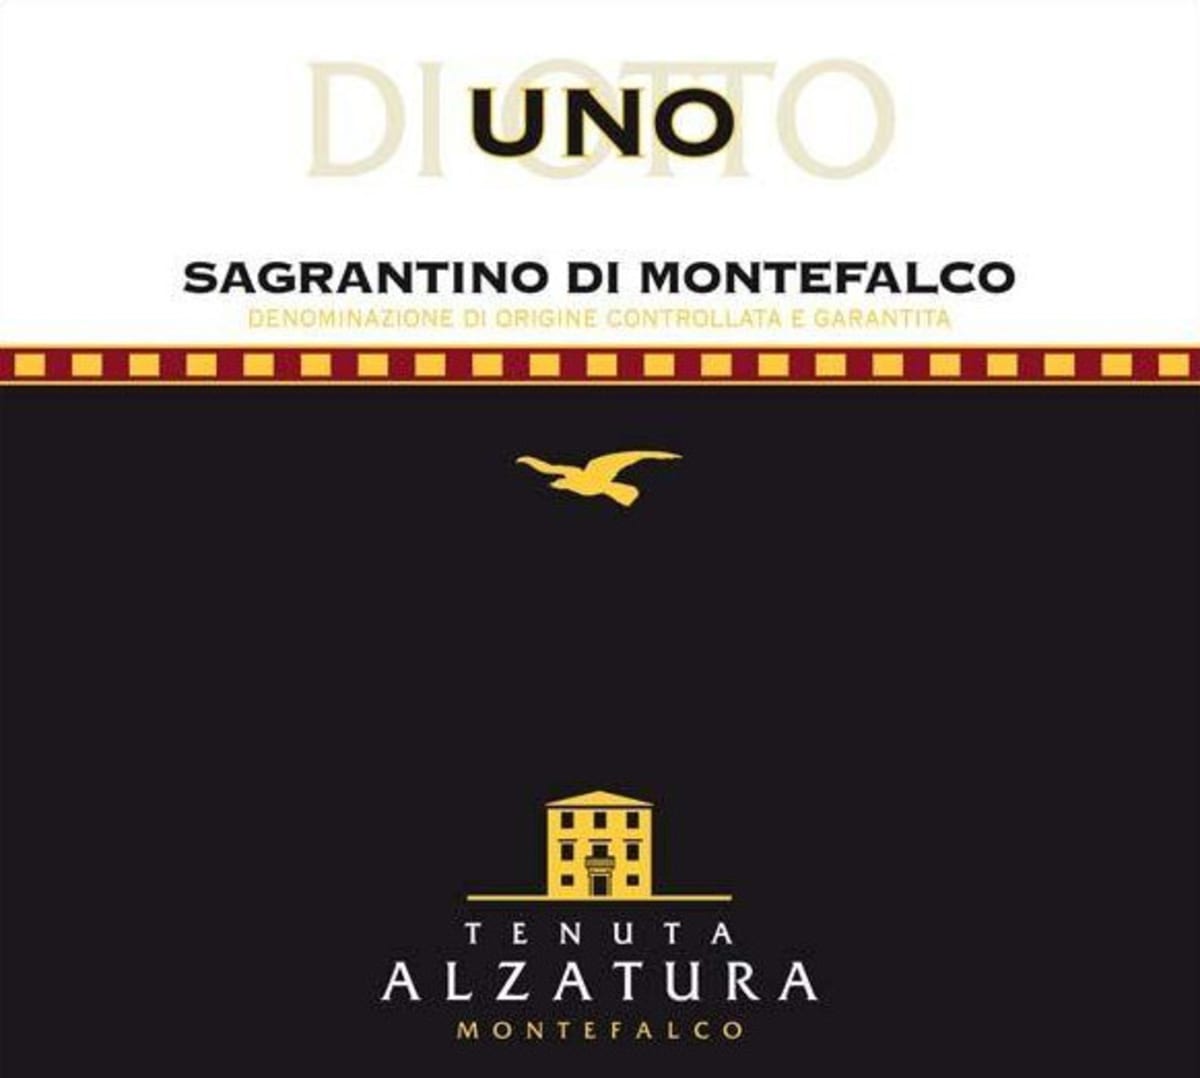 Tenuta Alzatura Uno di Sagrantino Montefalco 2008 Front Label